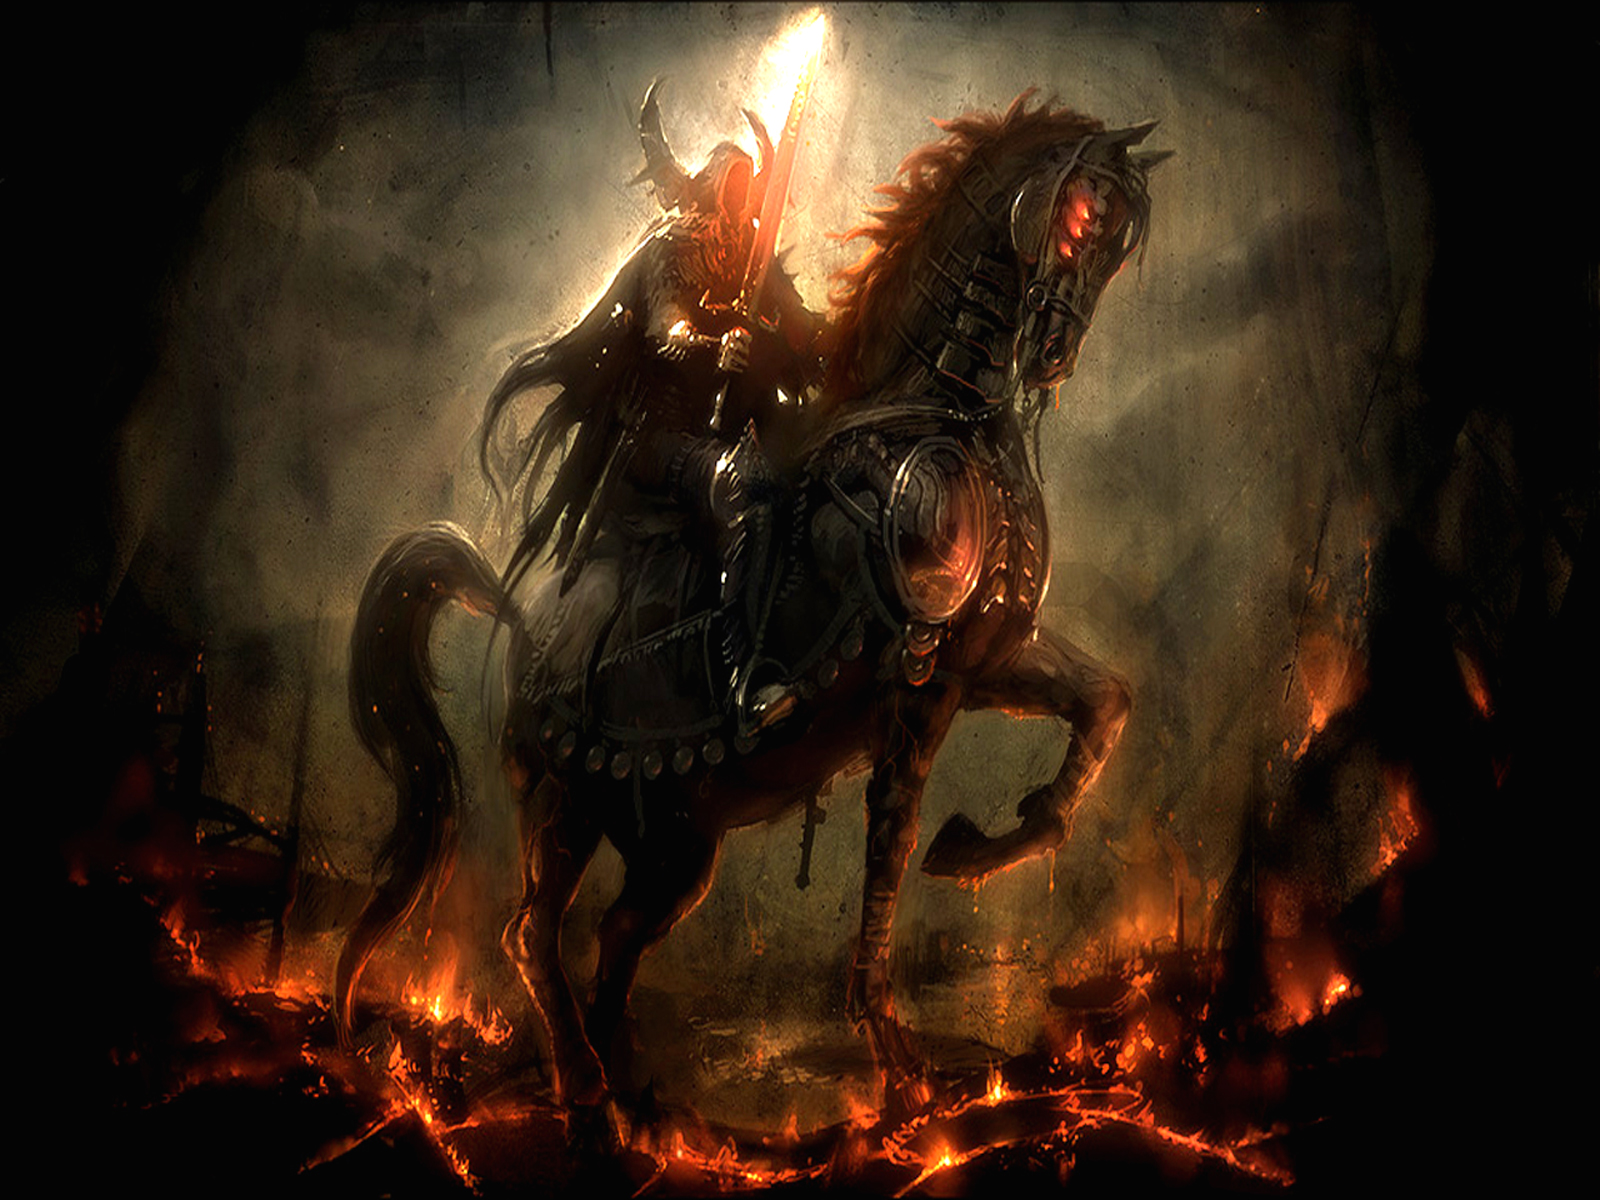 Apocalypse Rider: Dark warrior ready for battle.